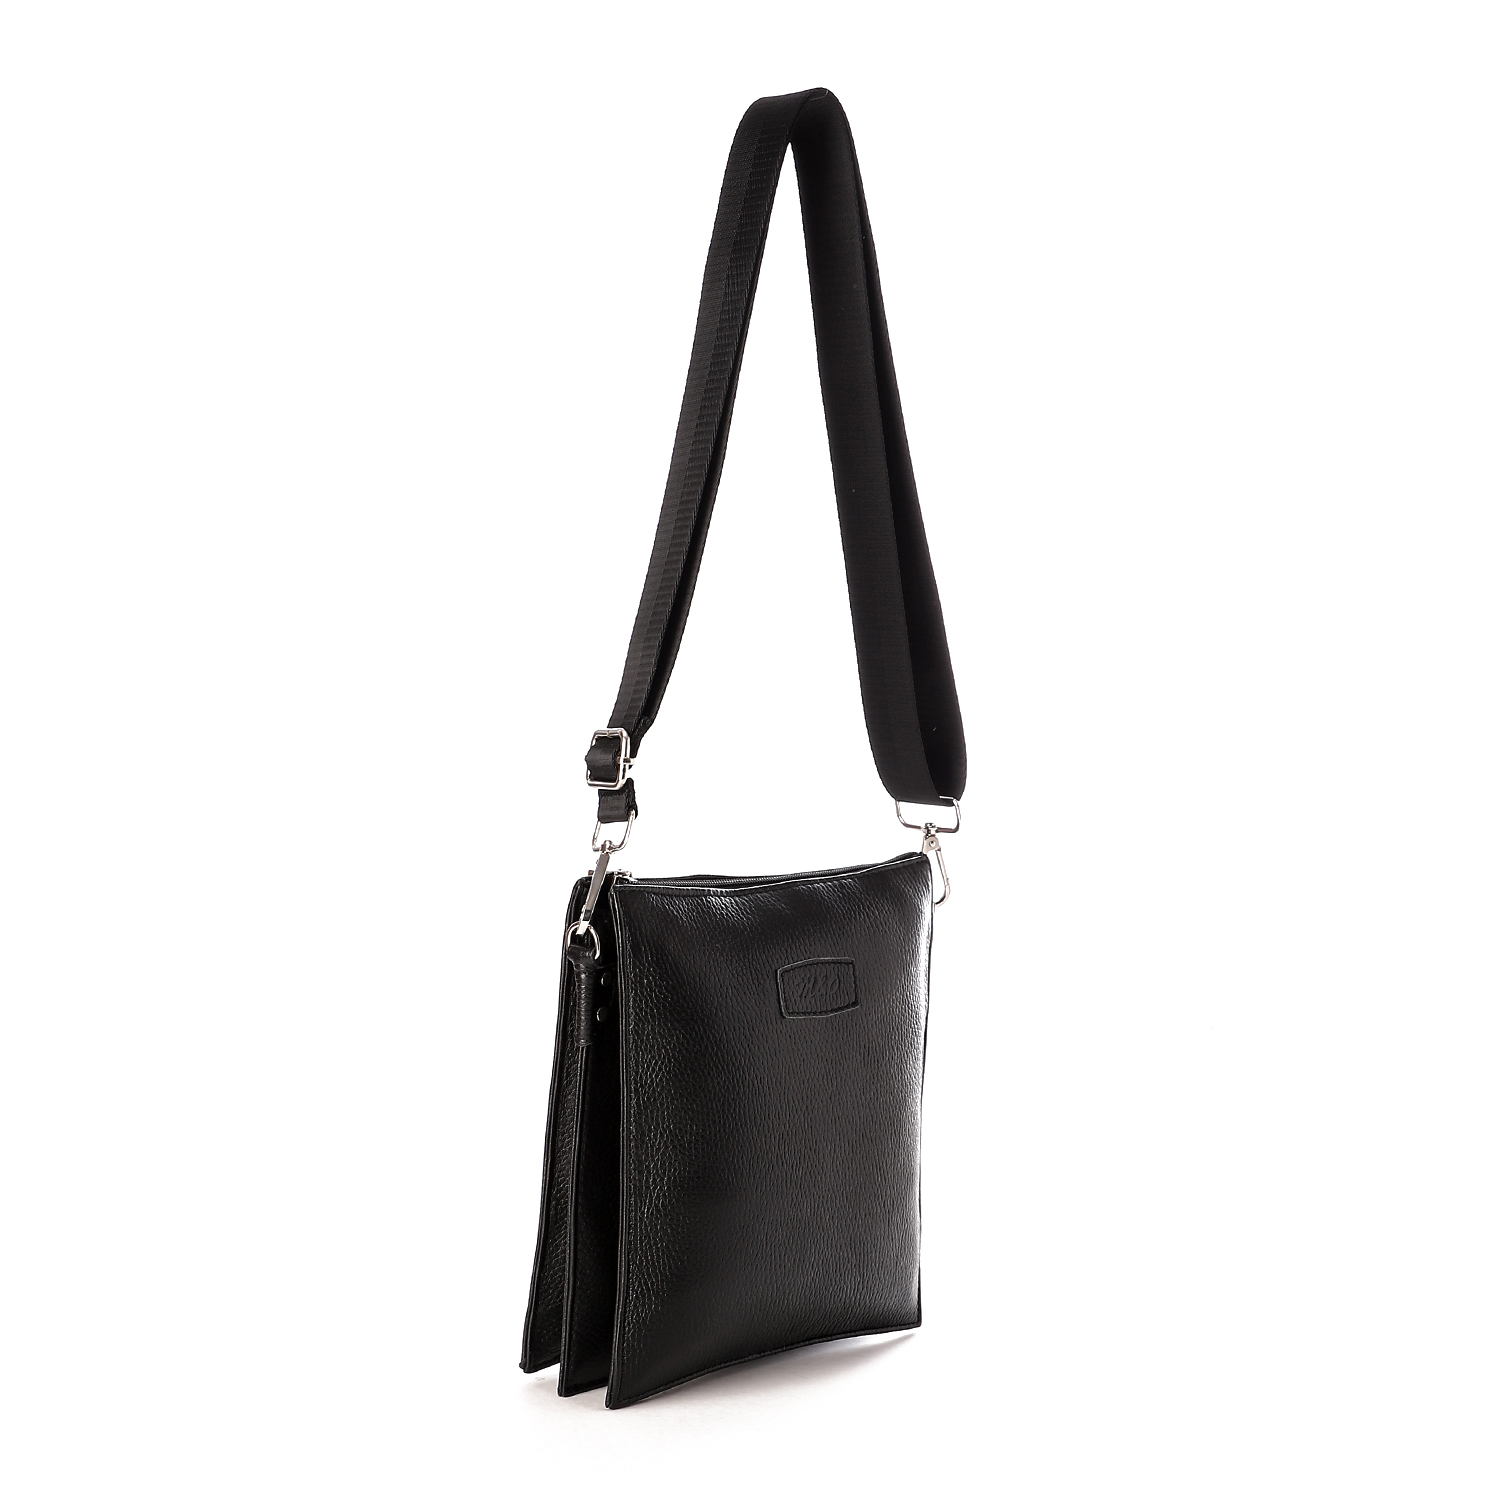 حقيبة كروس من أم أند أو بثلاث مقصورات جلد طبيعى للرجال - أسود